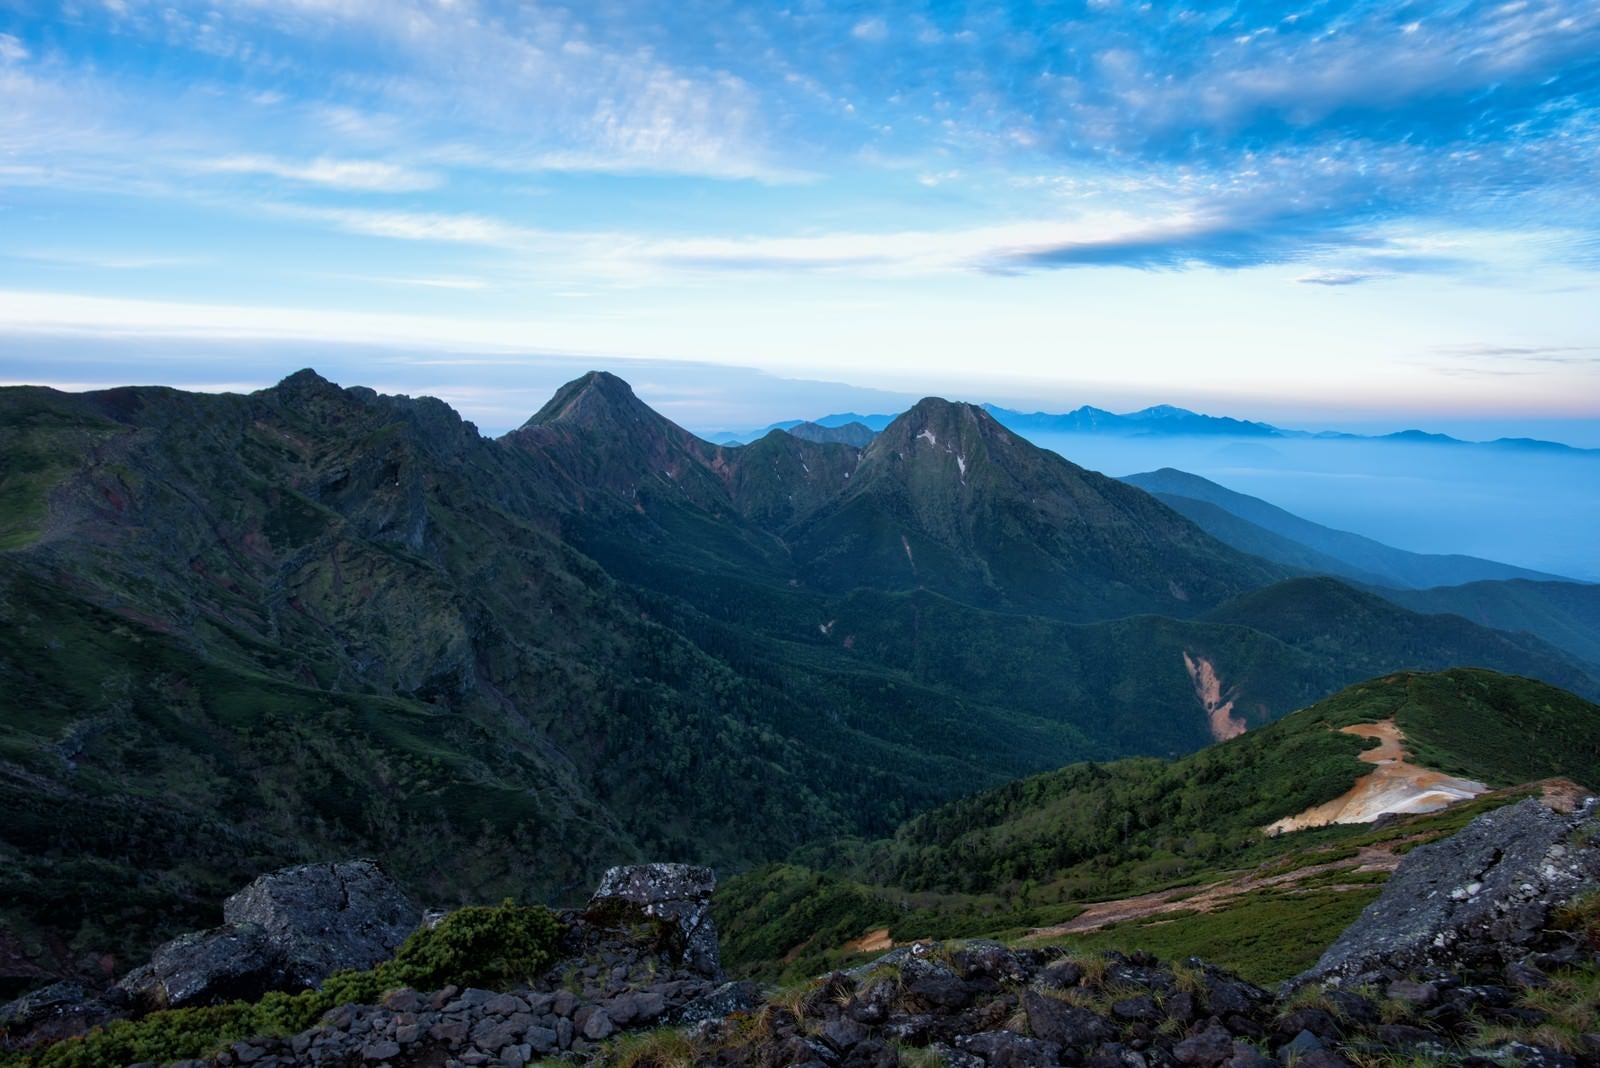 「硫黄岳から望む赤岳と阿弥陀岳」の写真